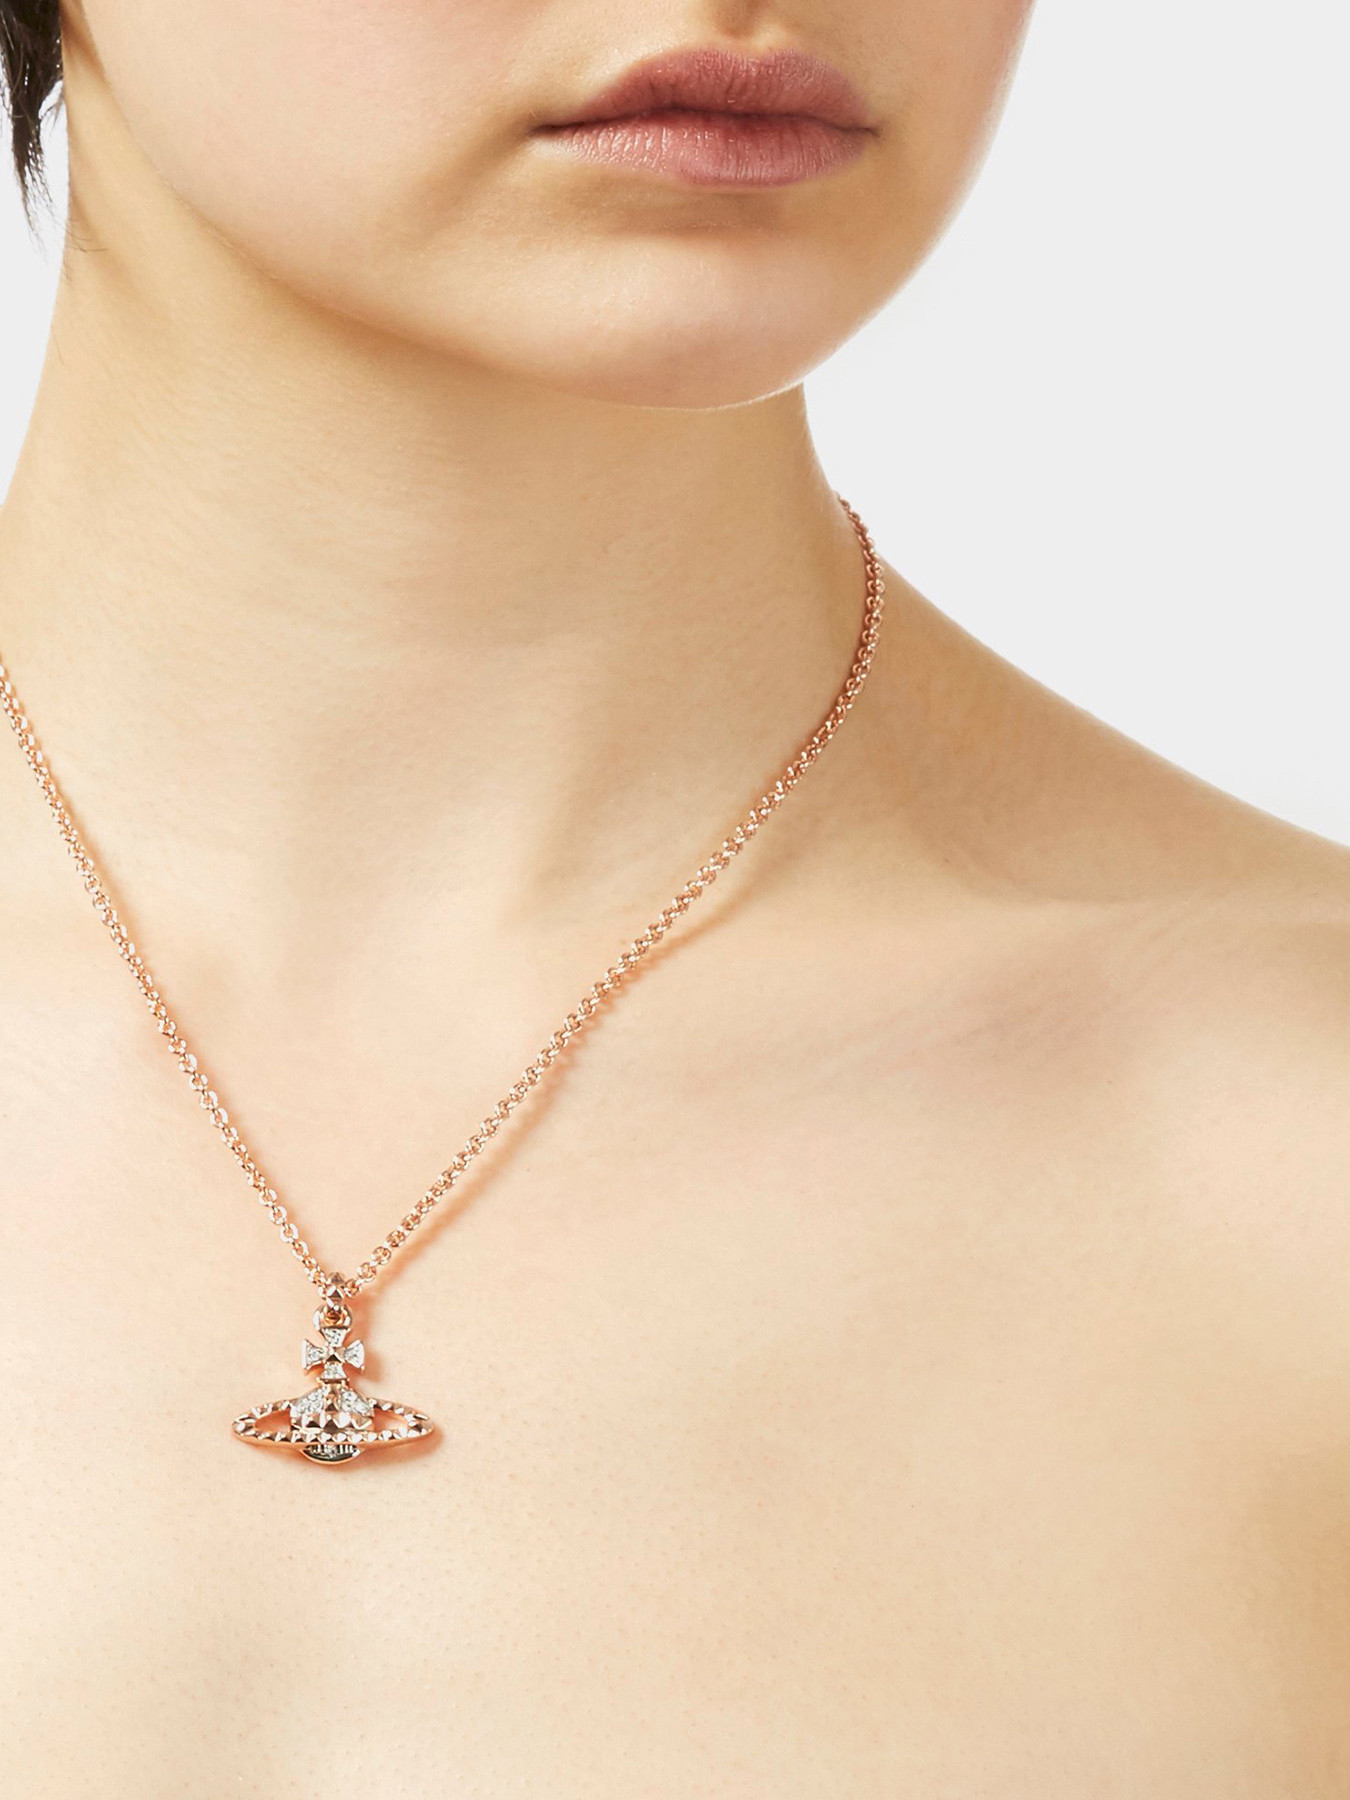 Mayfair Bas Relief pendant necklace | Vivienne Westwood | Eraldo.com